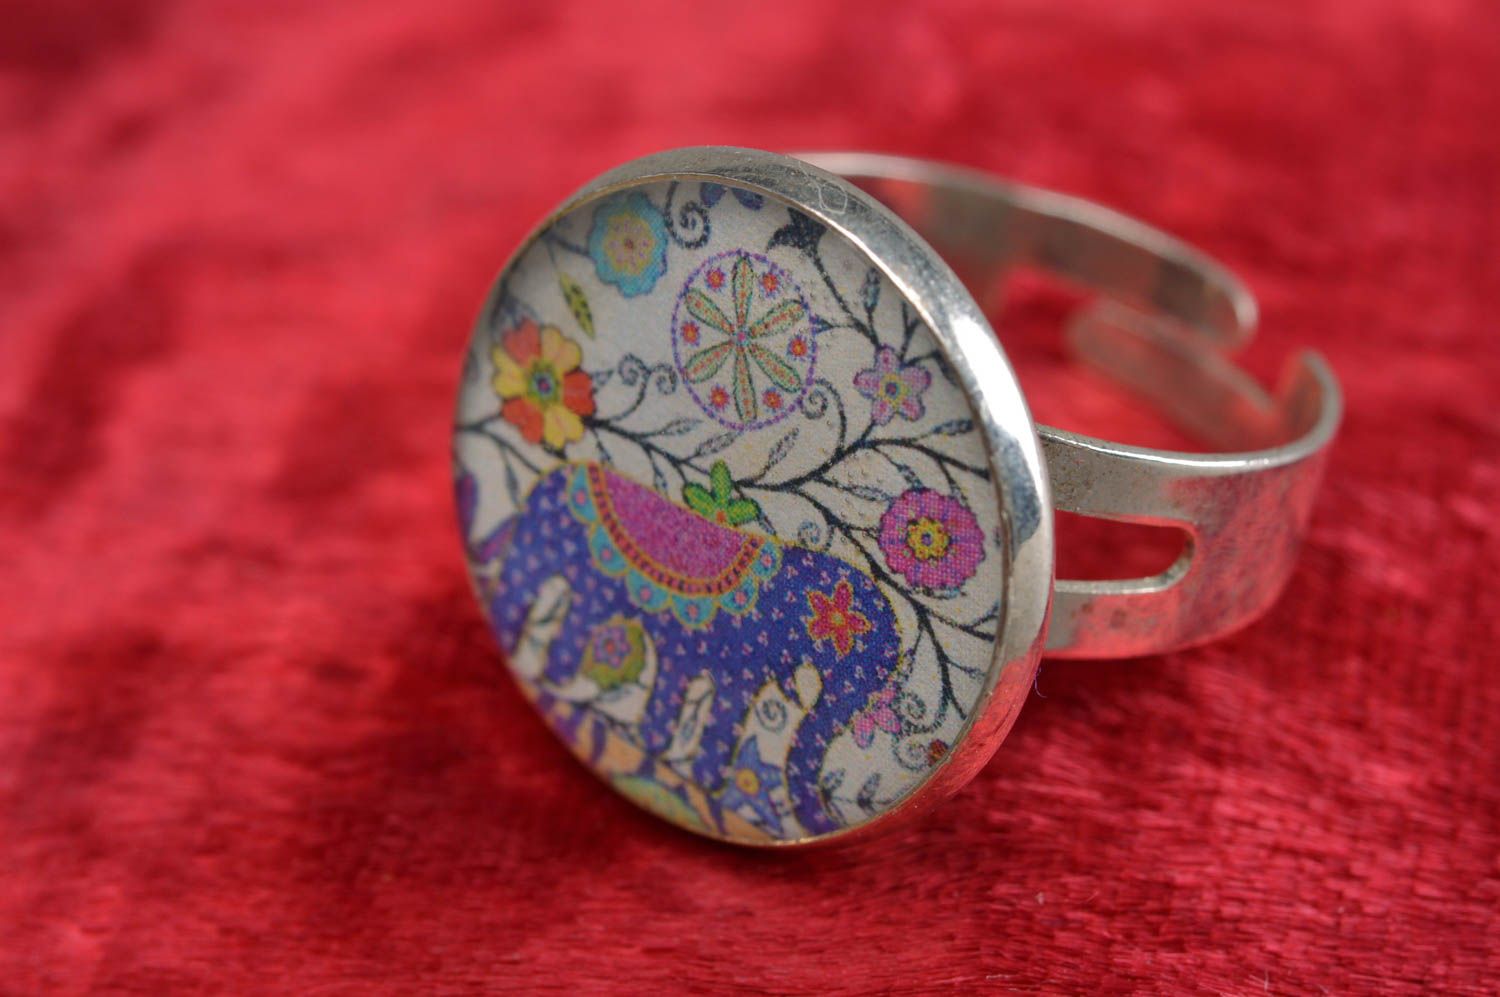 Handmade exklusiver Ring Vintage mit Blume im Epoxidharz für elegante Looks foto 1